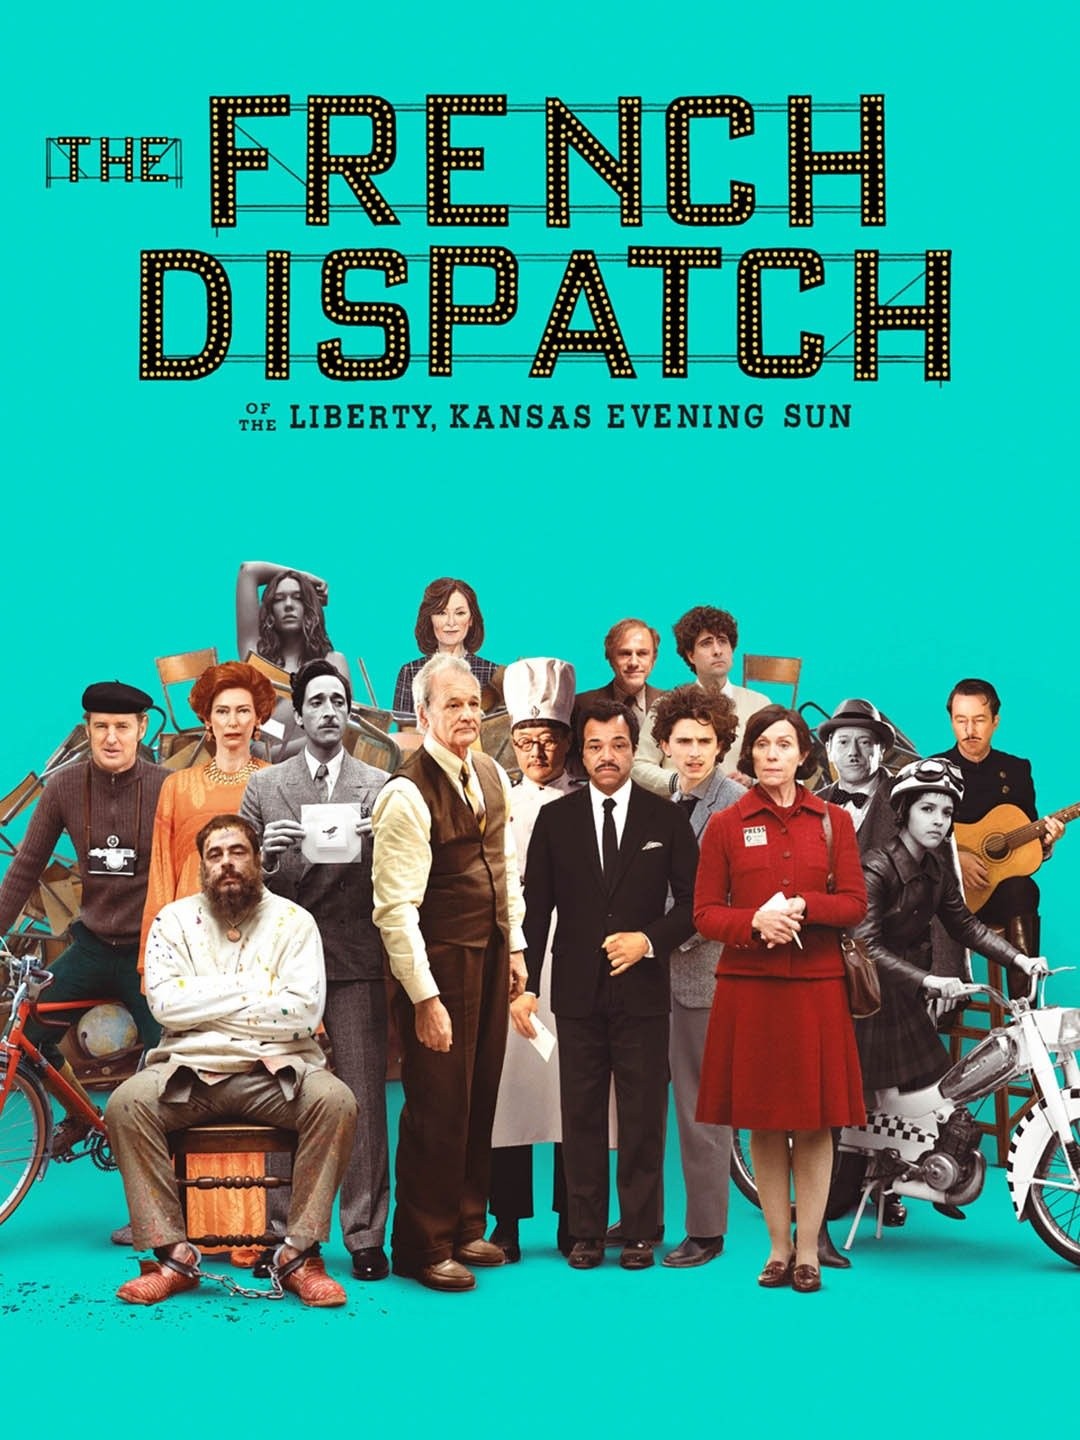 The French Dispatch (2021) - IMDb